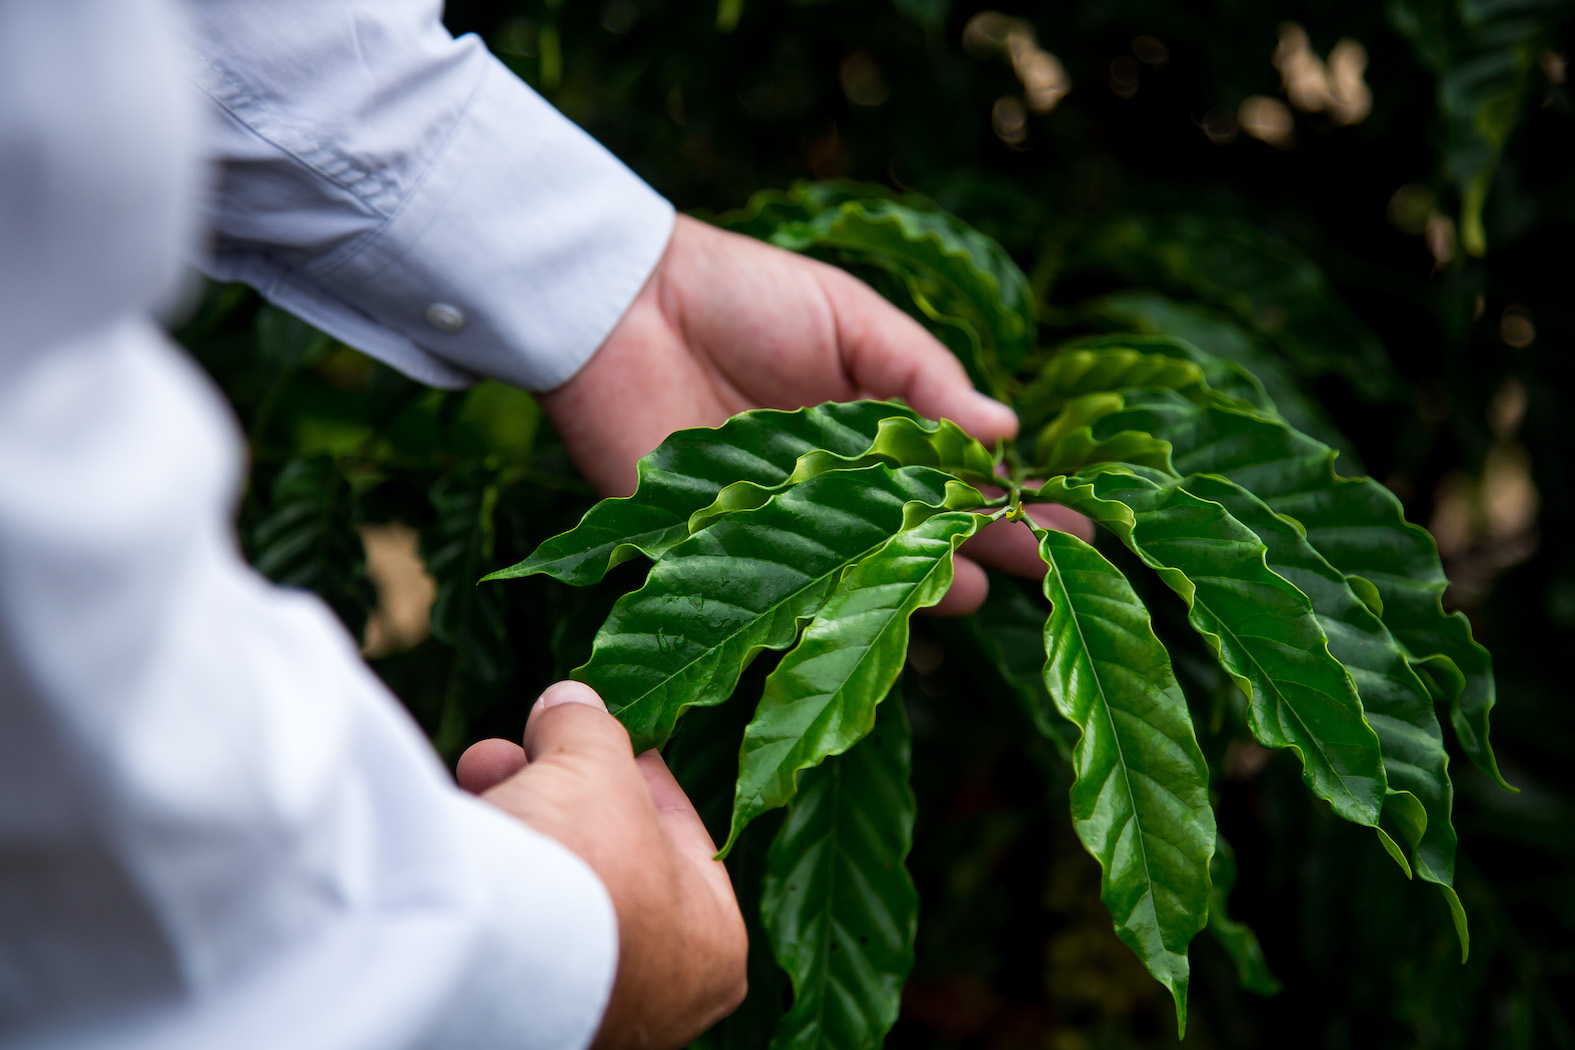 Cobre orgânico incrementa produtividade de café em 2,3 sacas por hectare